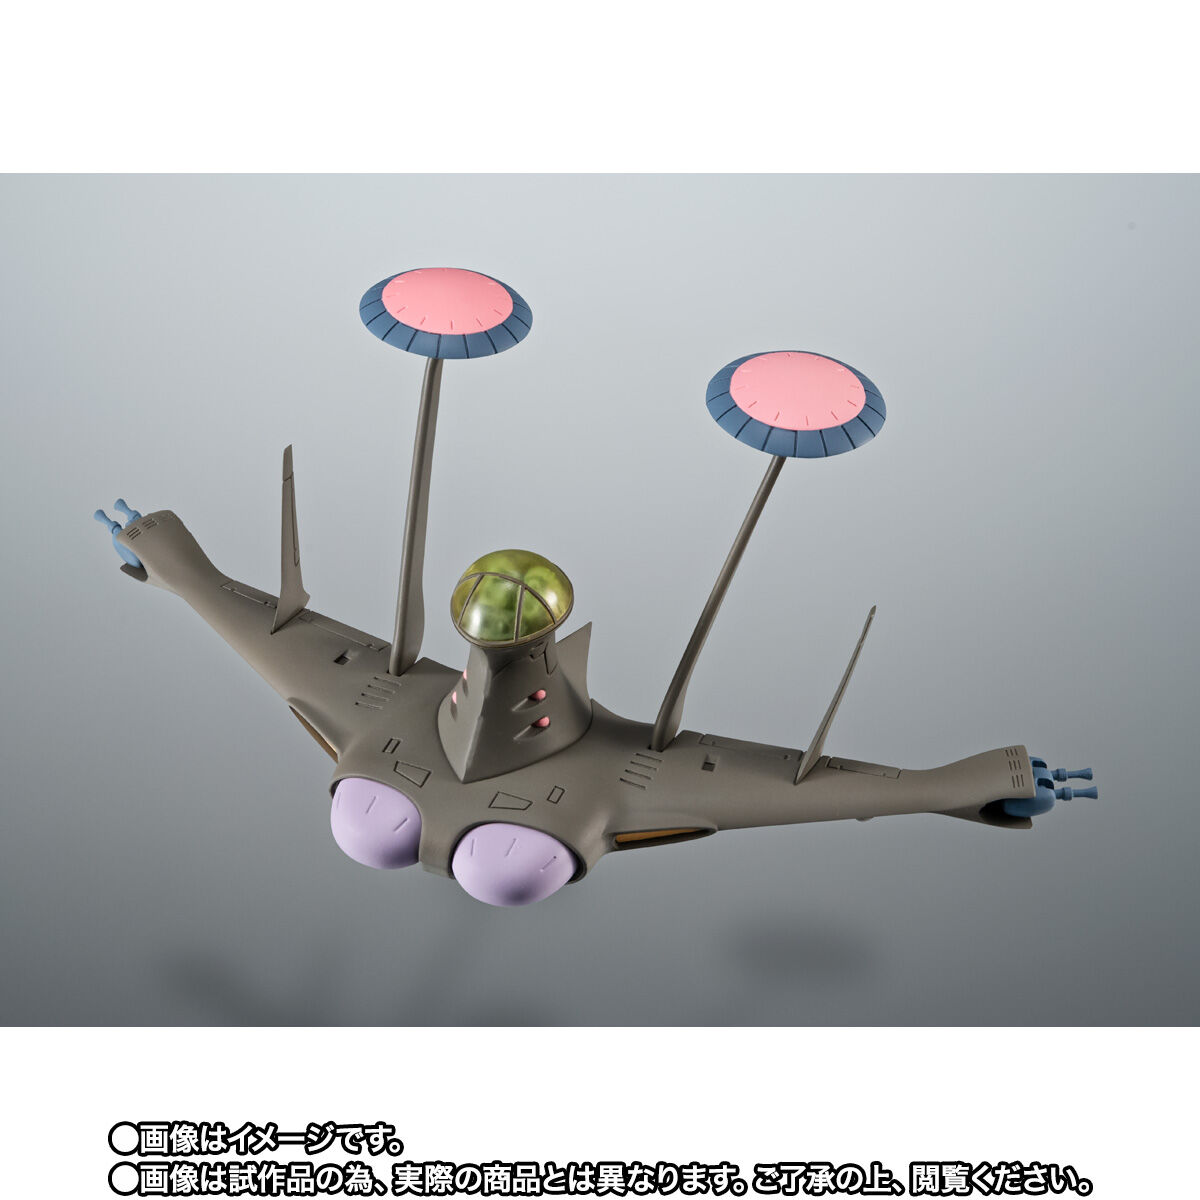 Robot Spirits(Side MS) R-SP MS-06F Zaku Ⅱ + Zeon‘s Rconnaissance Aircraft Luggun ver. A.N.I.M.E.